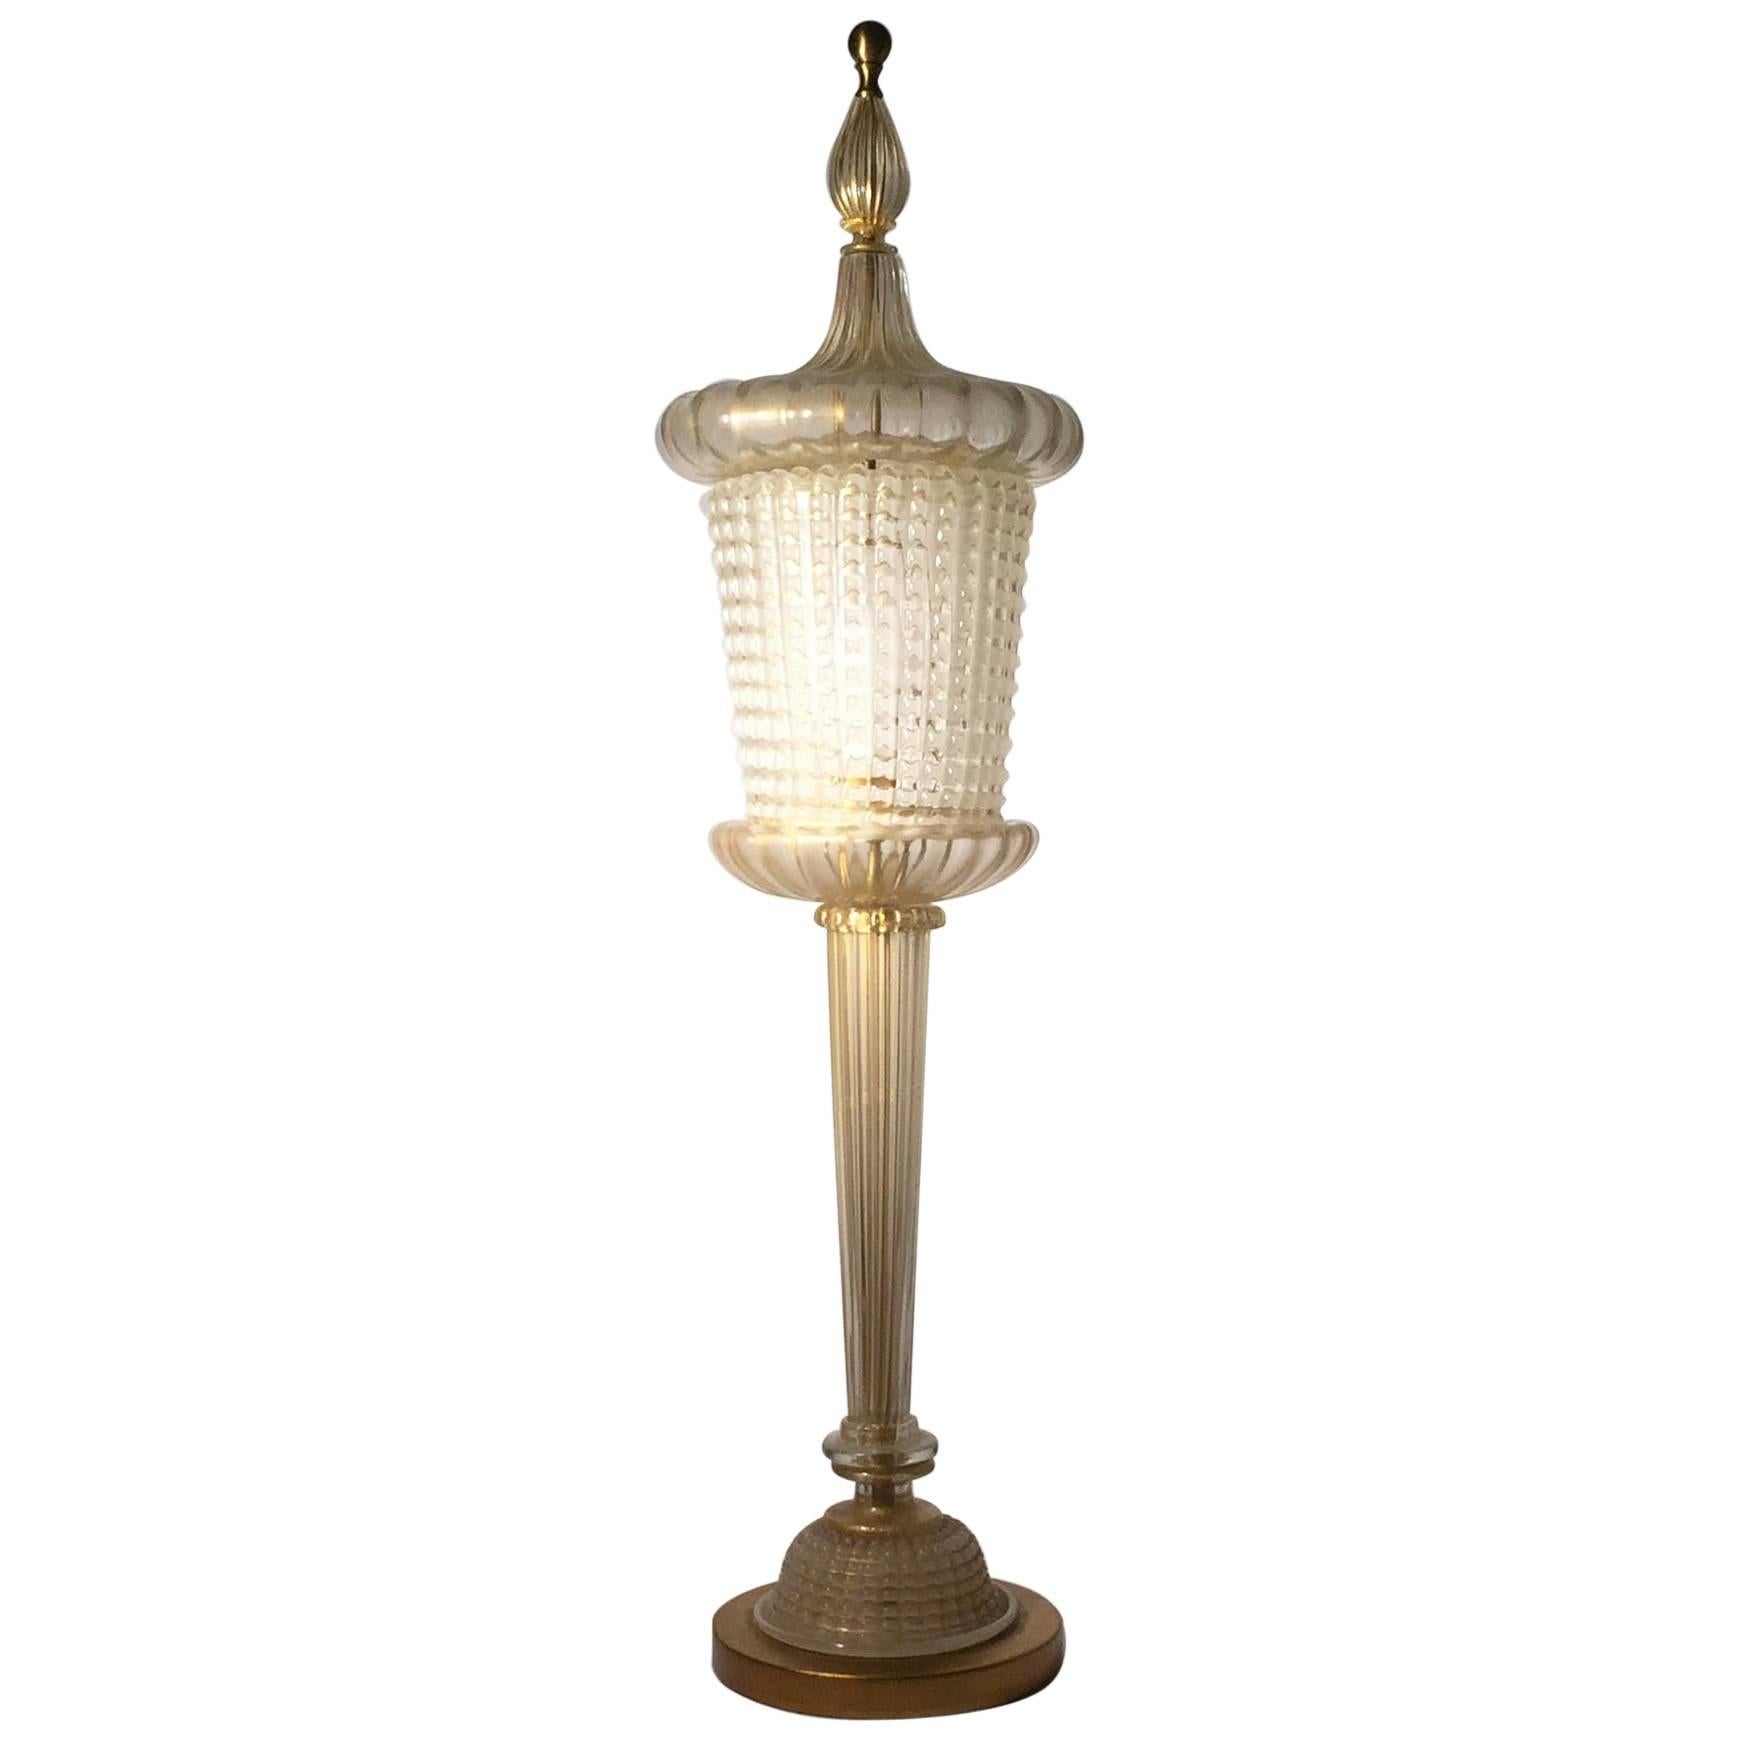 Seltene Muranoglas-Tischlampe von Barovier